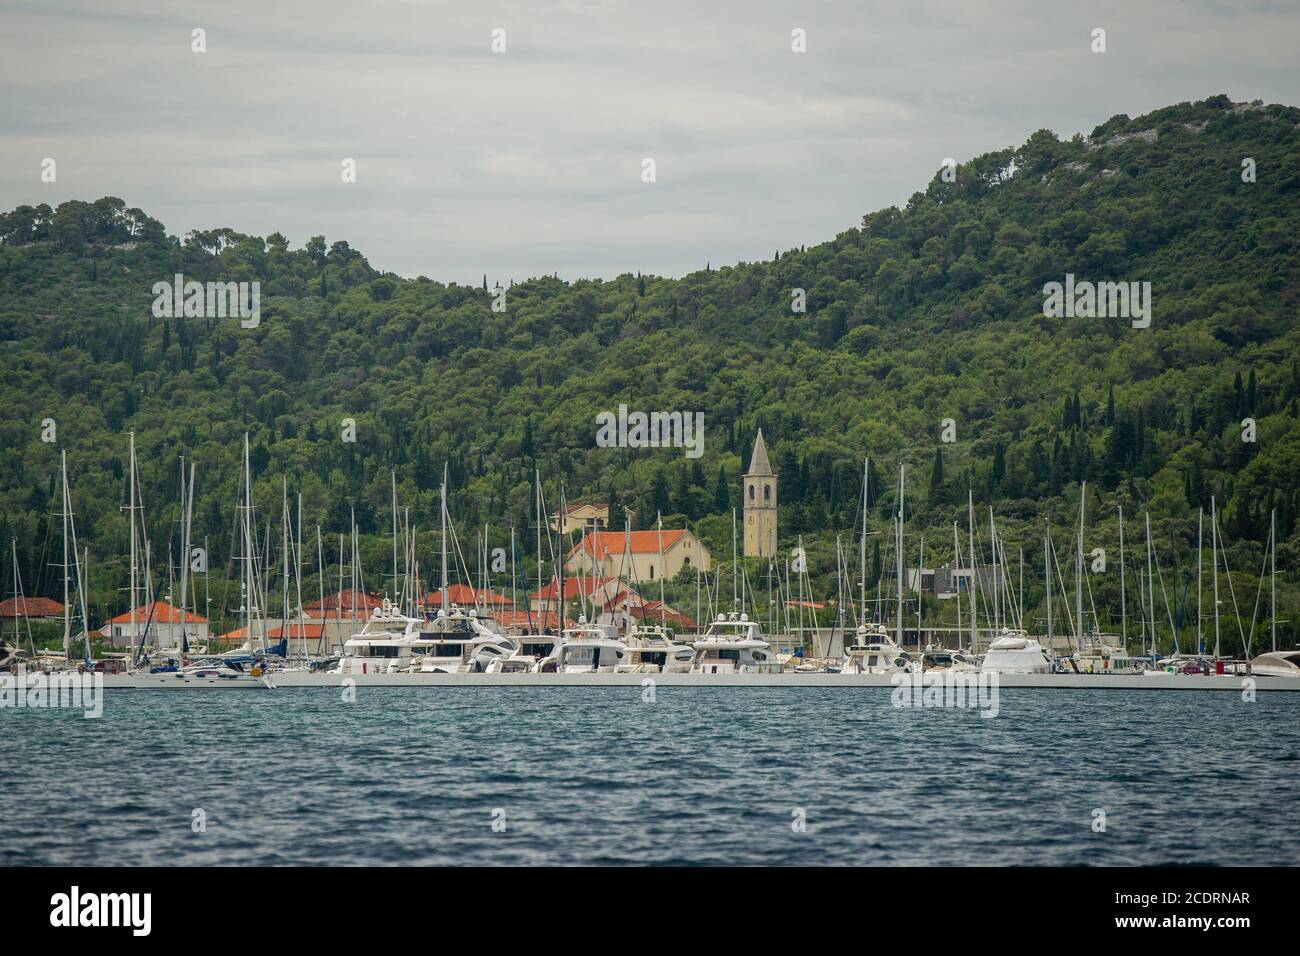 La pace e il relax si possono trovare lungo la splendida costa croata, nuotando, pescando e rilassandosi su una barca o sulla riva. Foto Stock